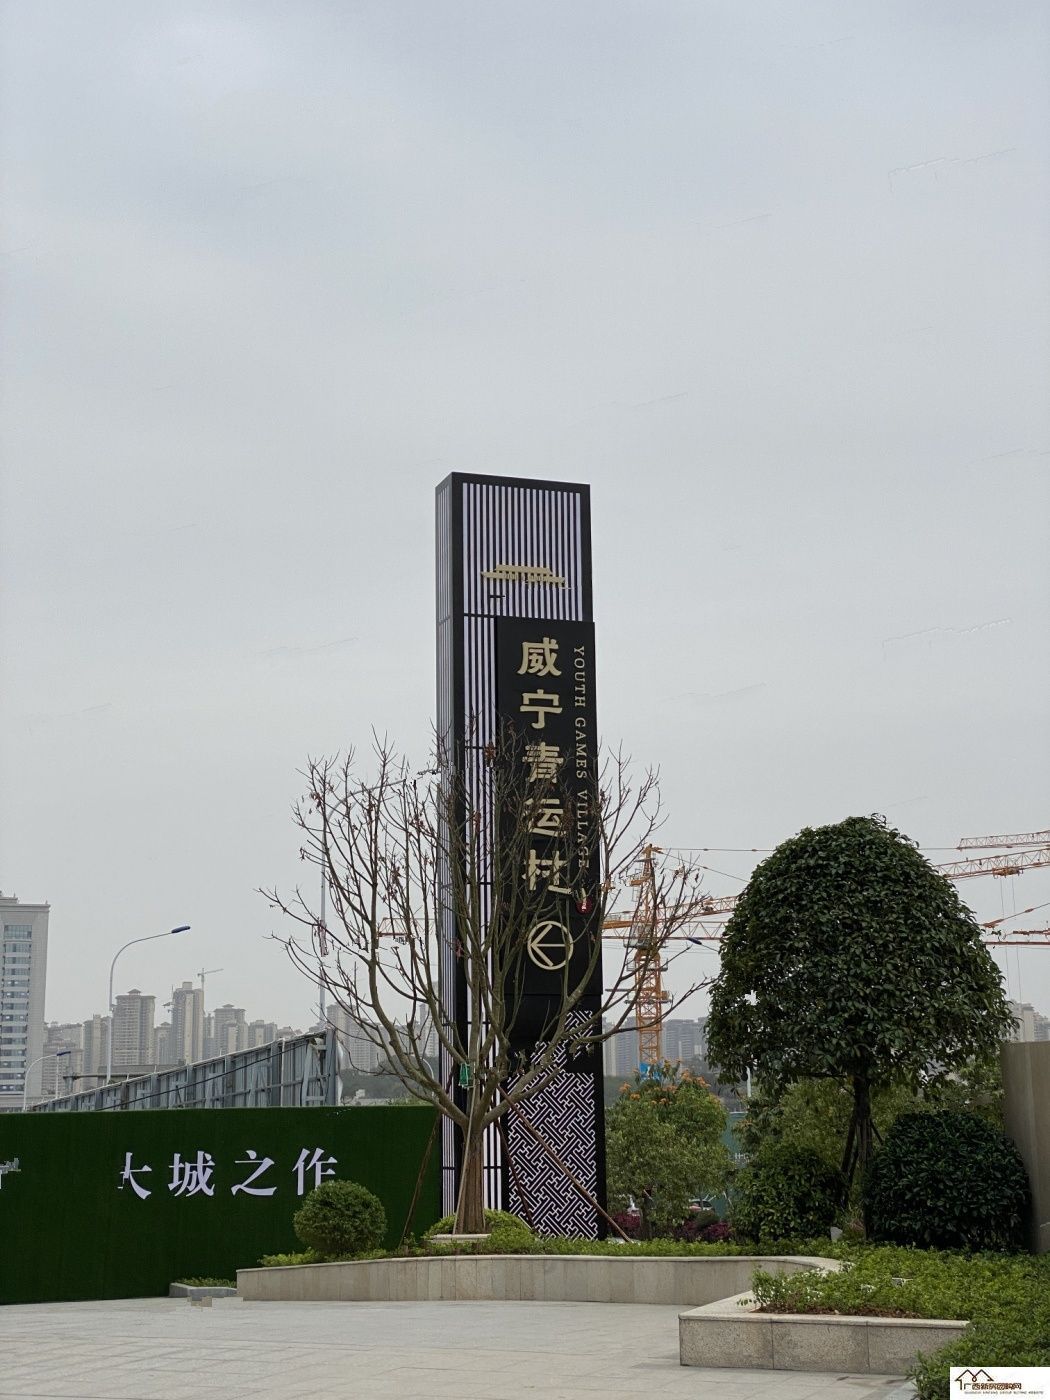 威宁青运村